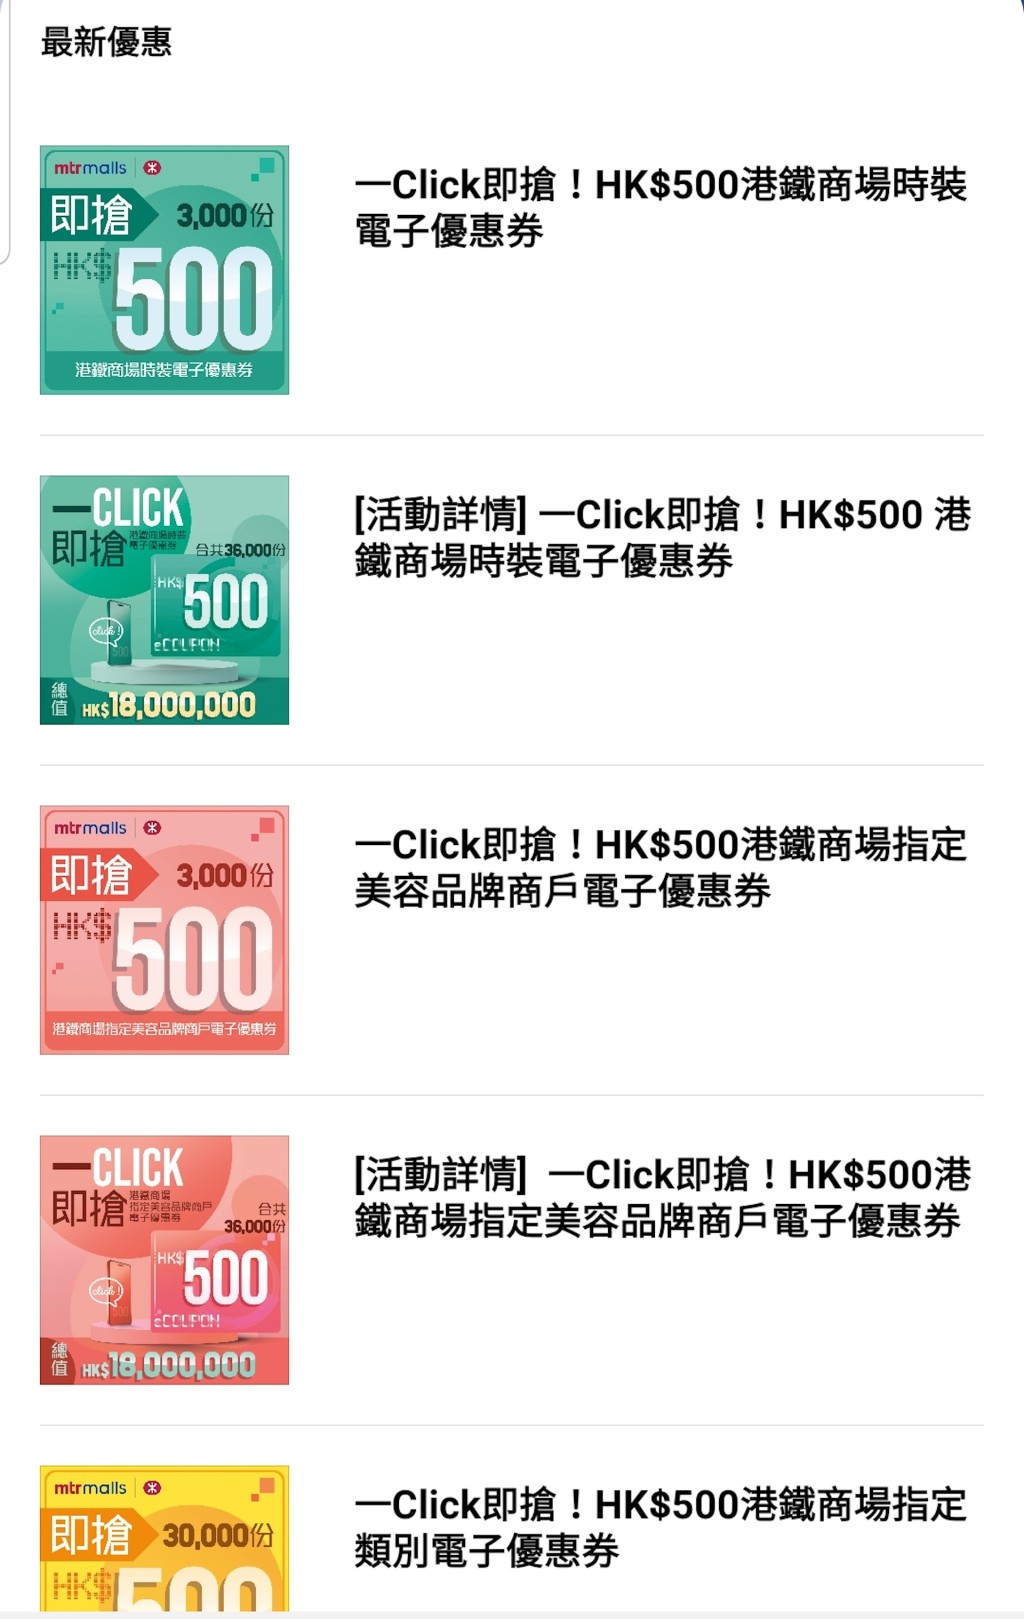 每位MTR Mobile登记用户可领取每款电子优惠券1次，即合共1500元，先到先得。 APP截图